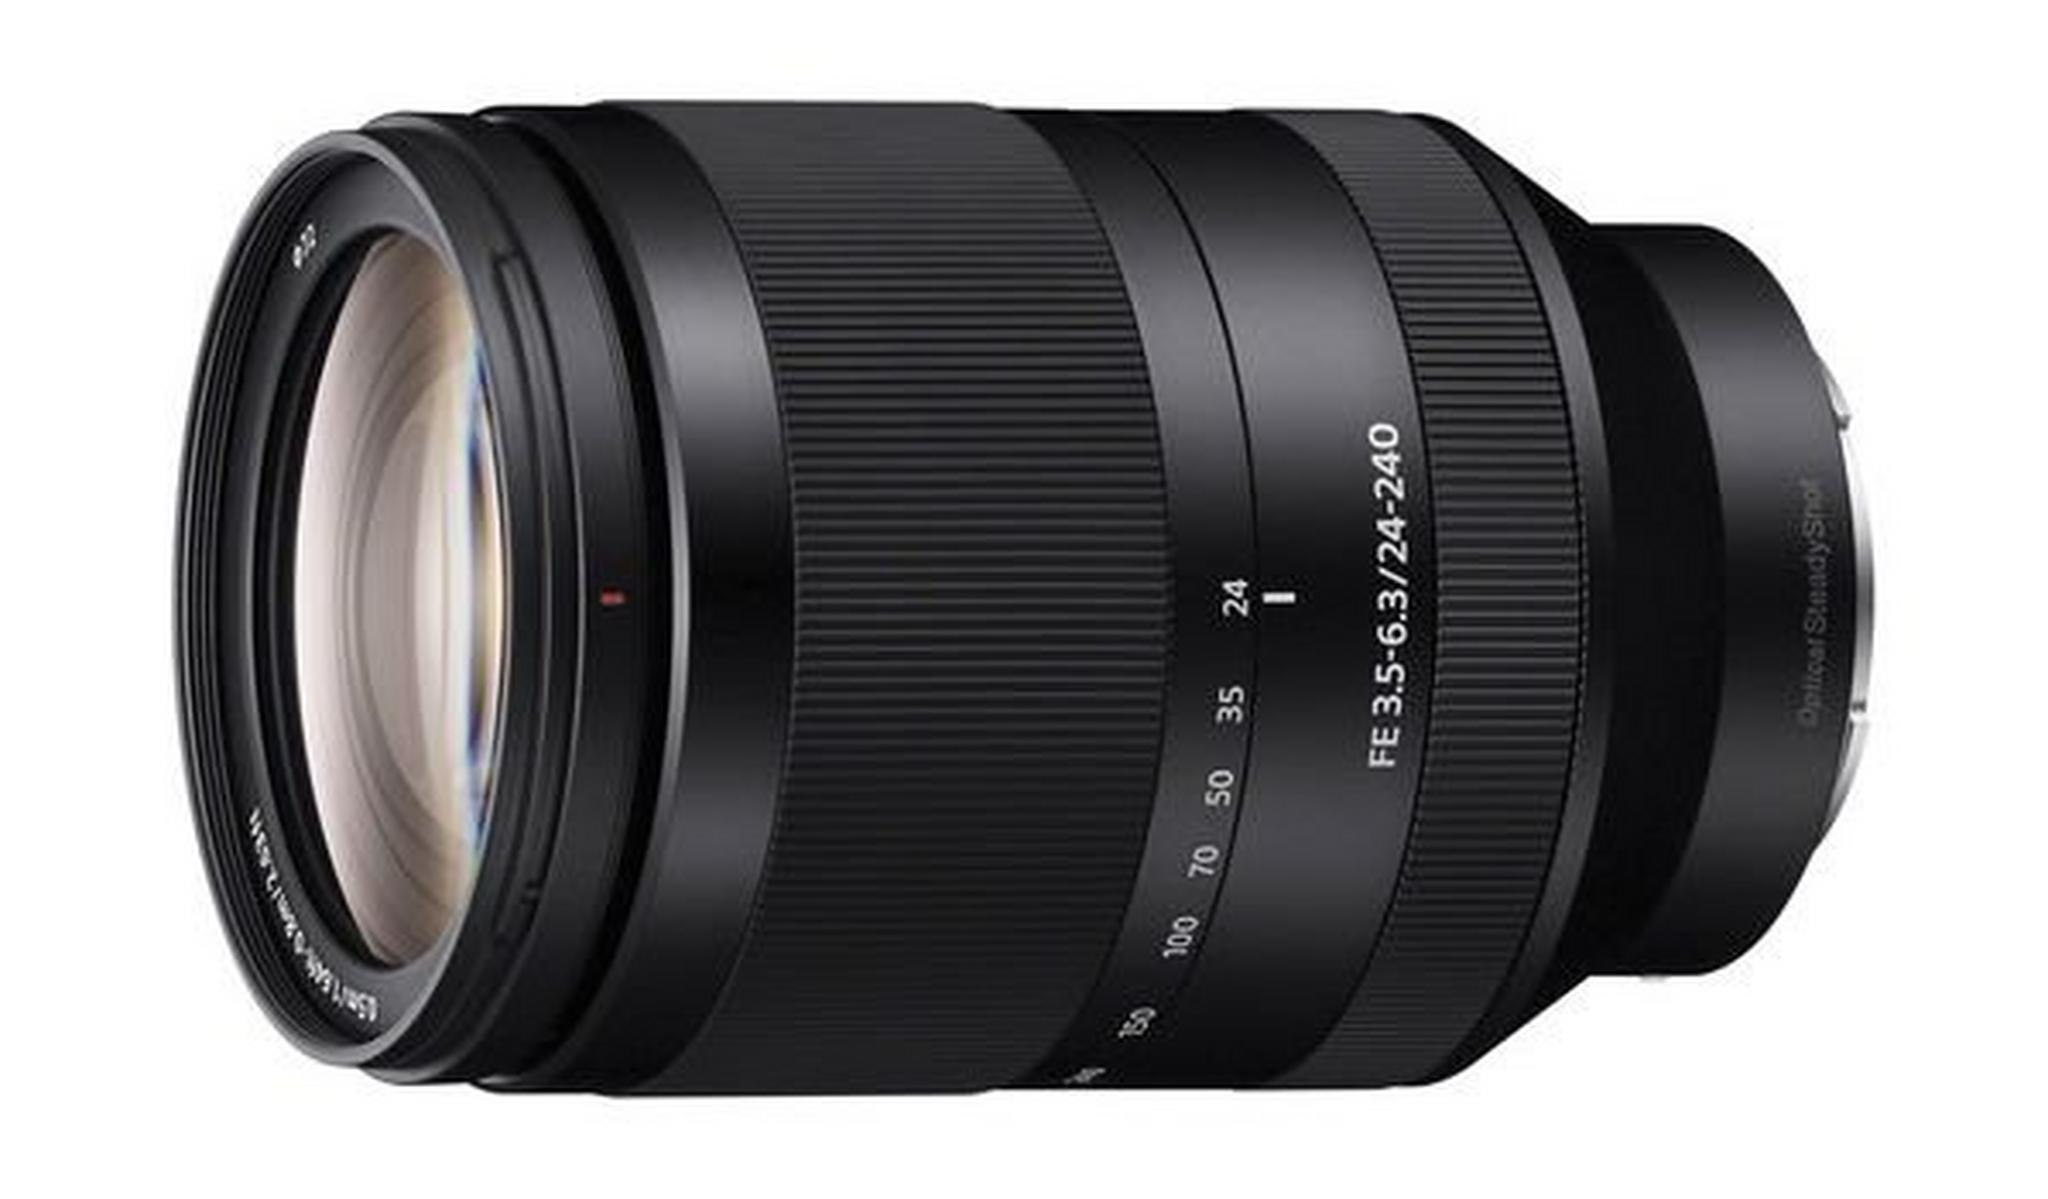 Sony 24-240mm F/3.5-6.3 Autofocus OSS Lens (SEL24240) - Black